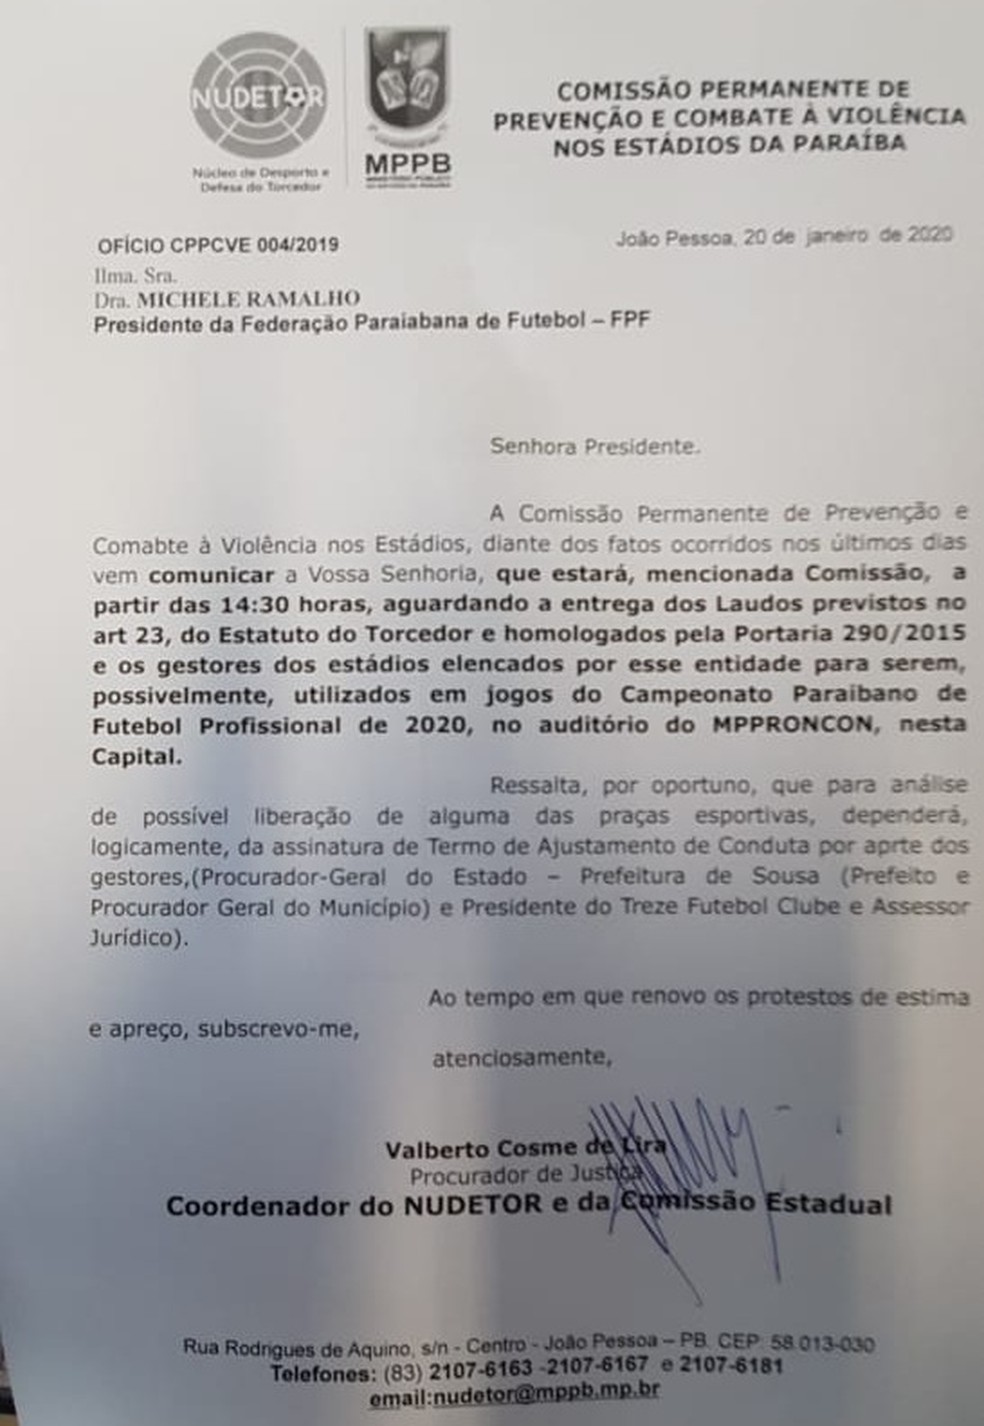 Ofício assinado pelo procurador Valberto Lira endereçado à presidenta da Federação Paraibana de Futebol (FPF), Michelle Ramalho — Foto: Divulgação / Nudetor